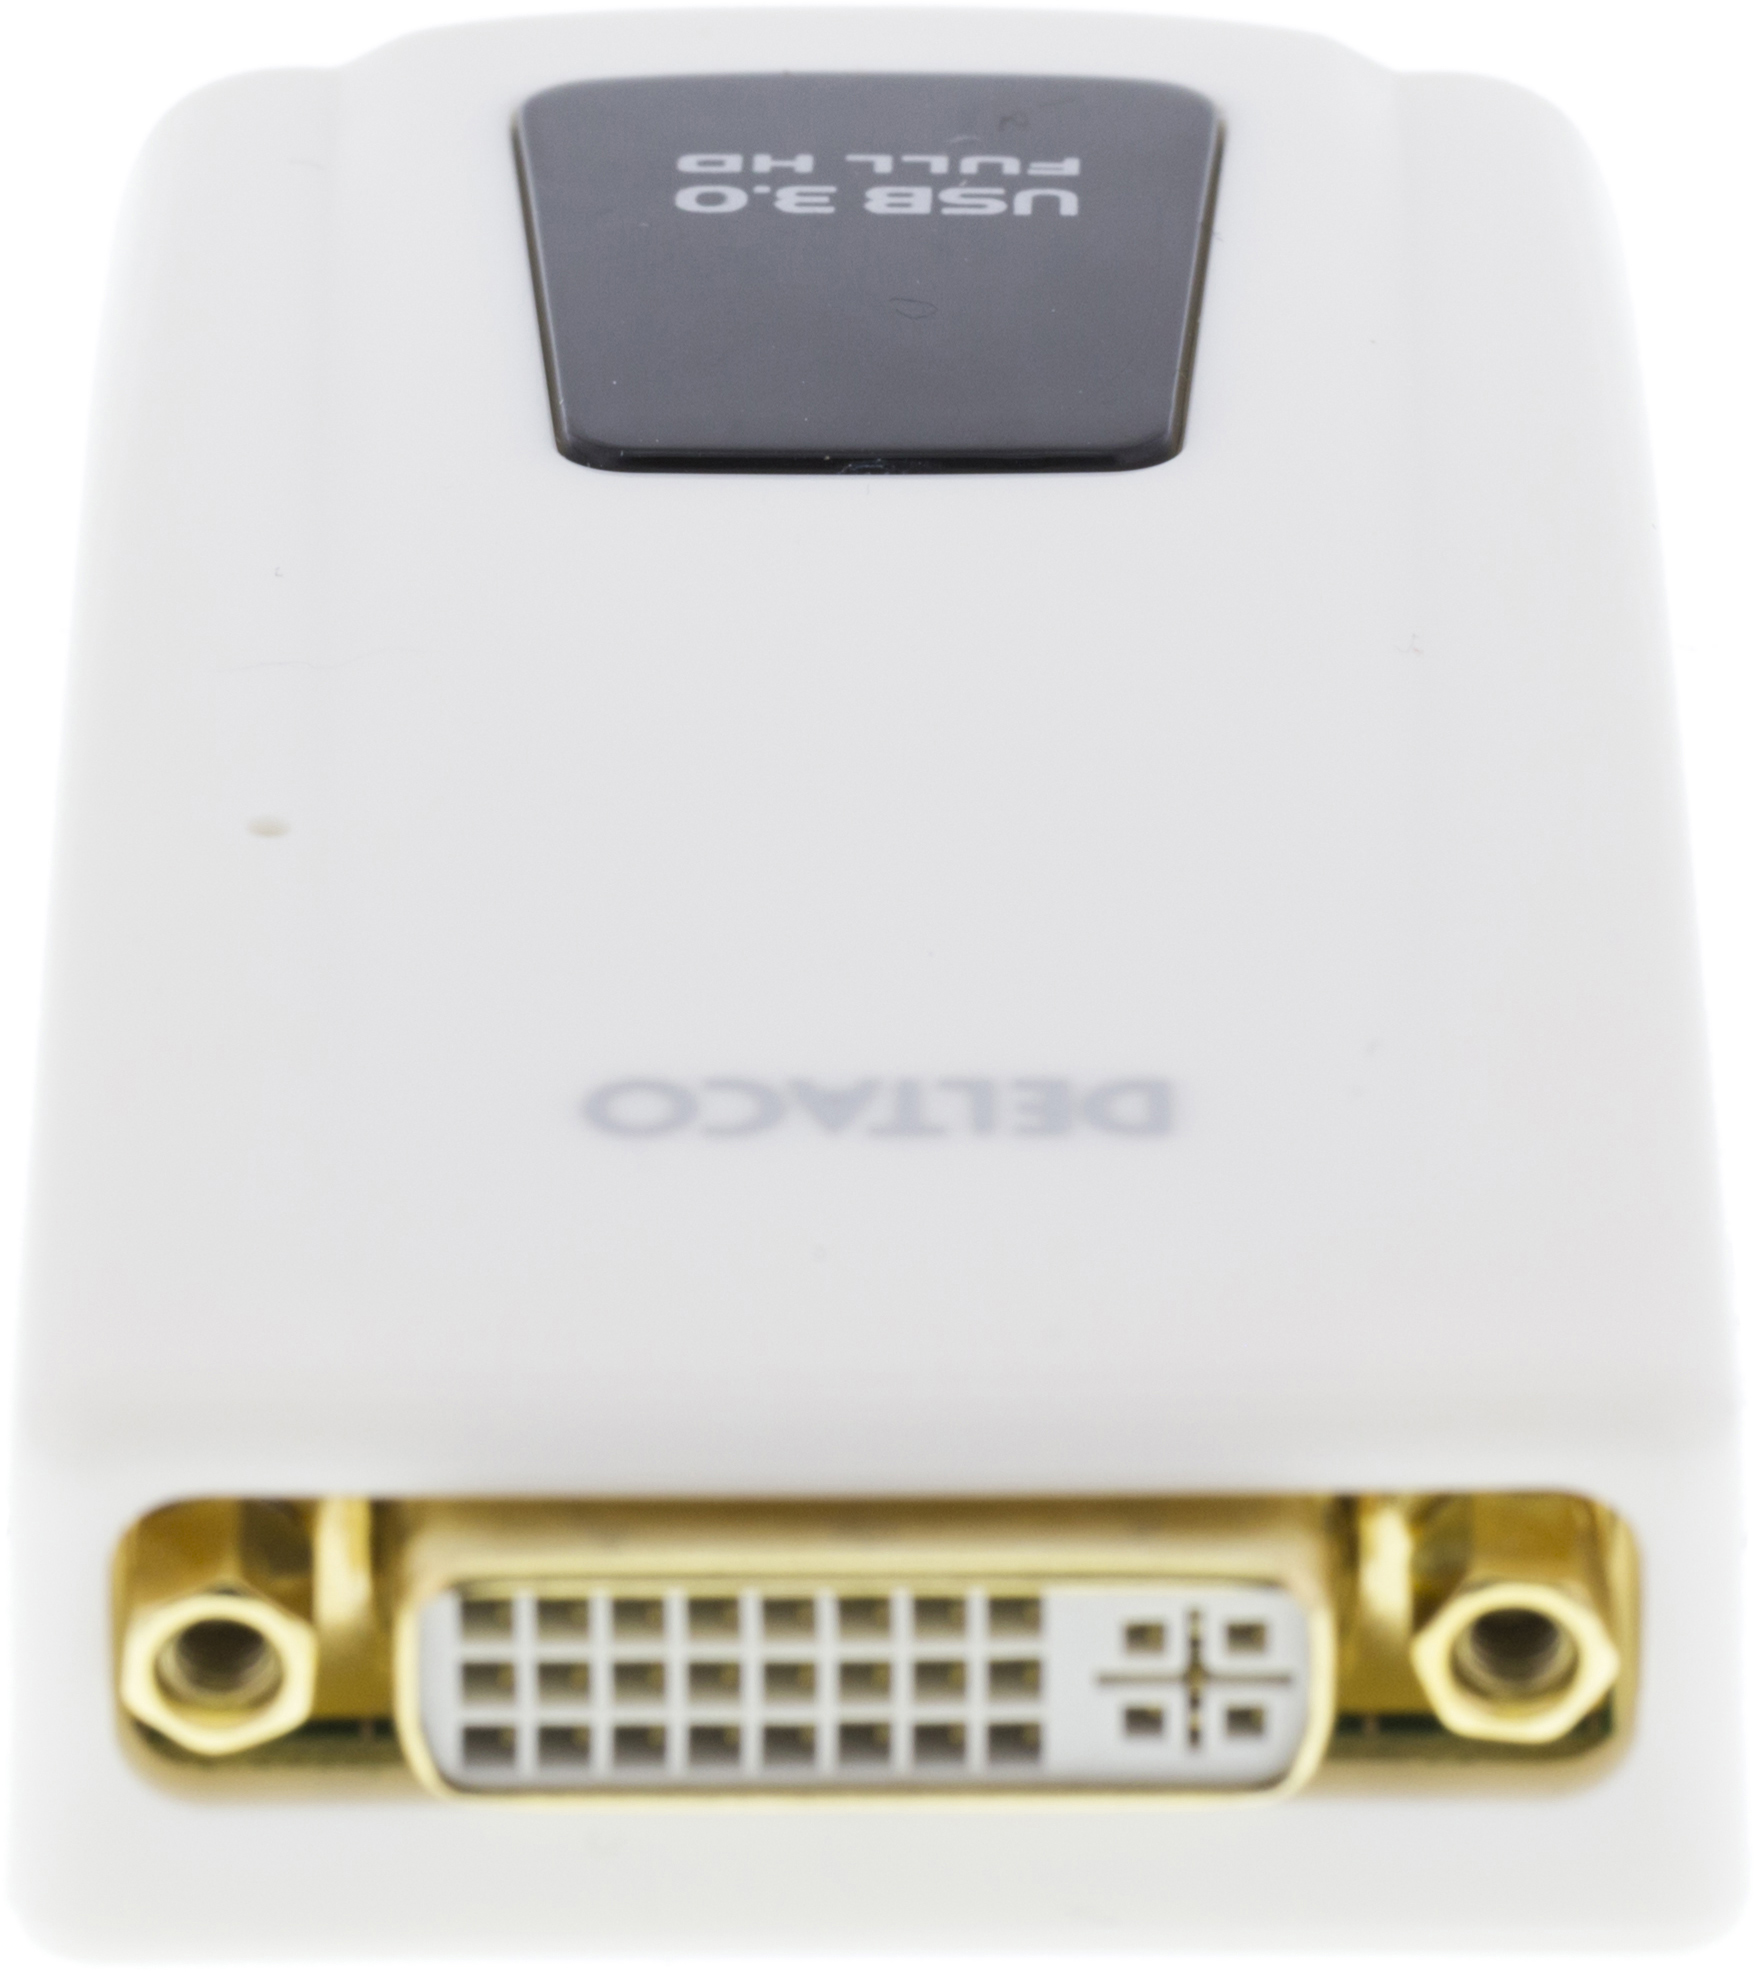 Weiss USB3-DVI Adapter, DELTACO